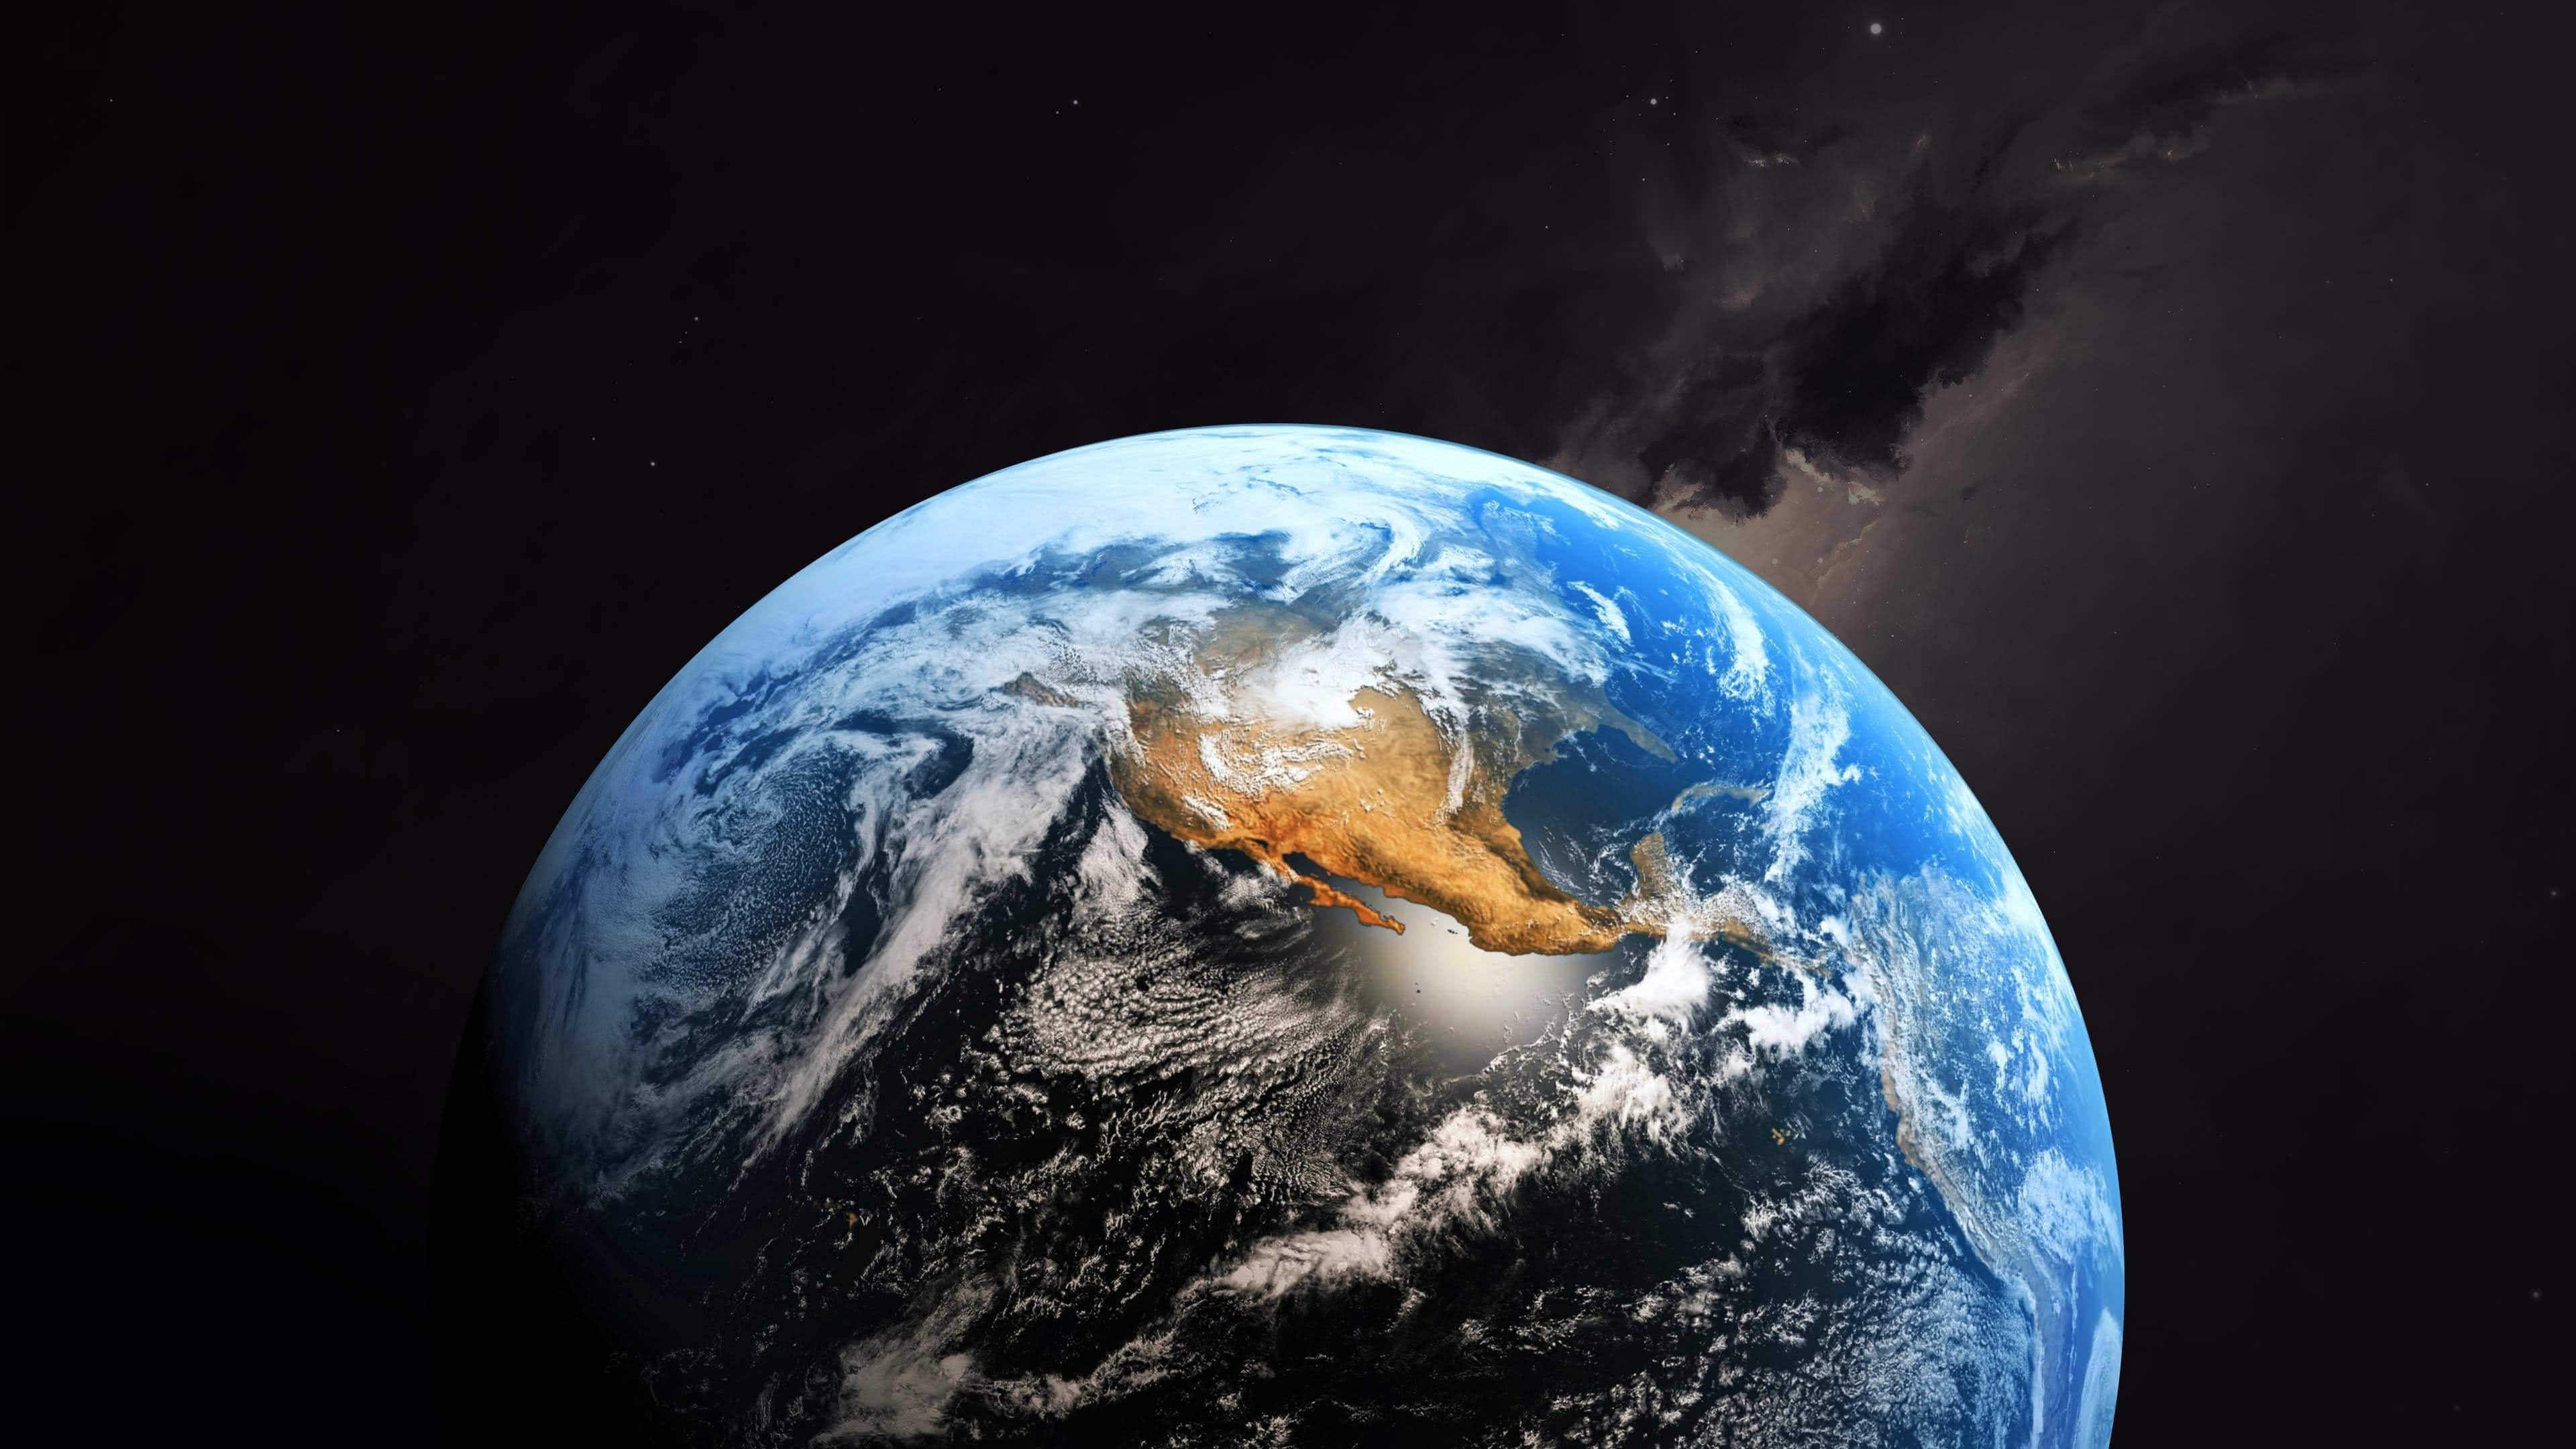 3840 x 2160 · jpeg - Earth From Space UHD 4K Wallpaper | Pixelz